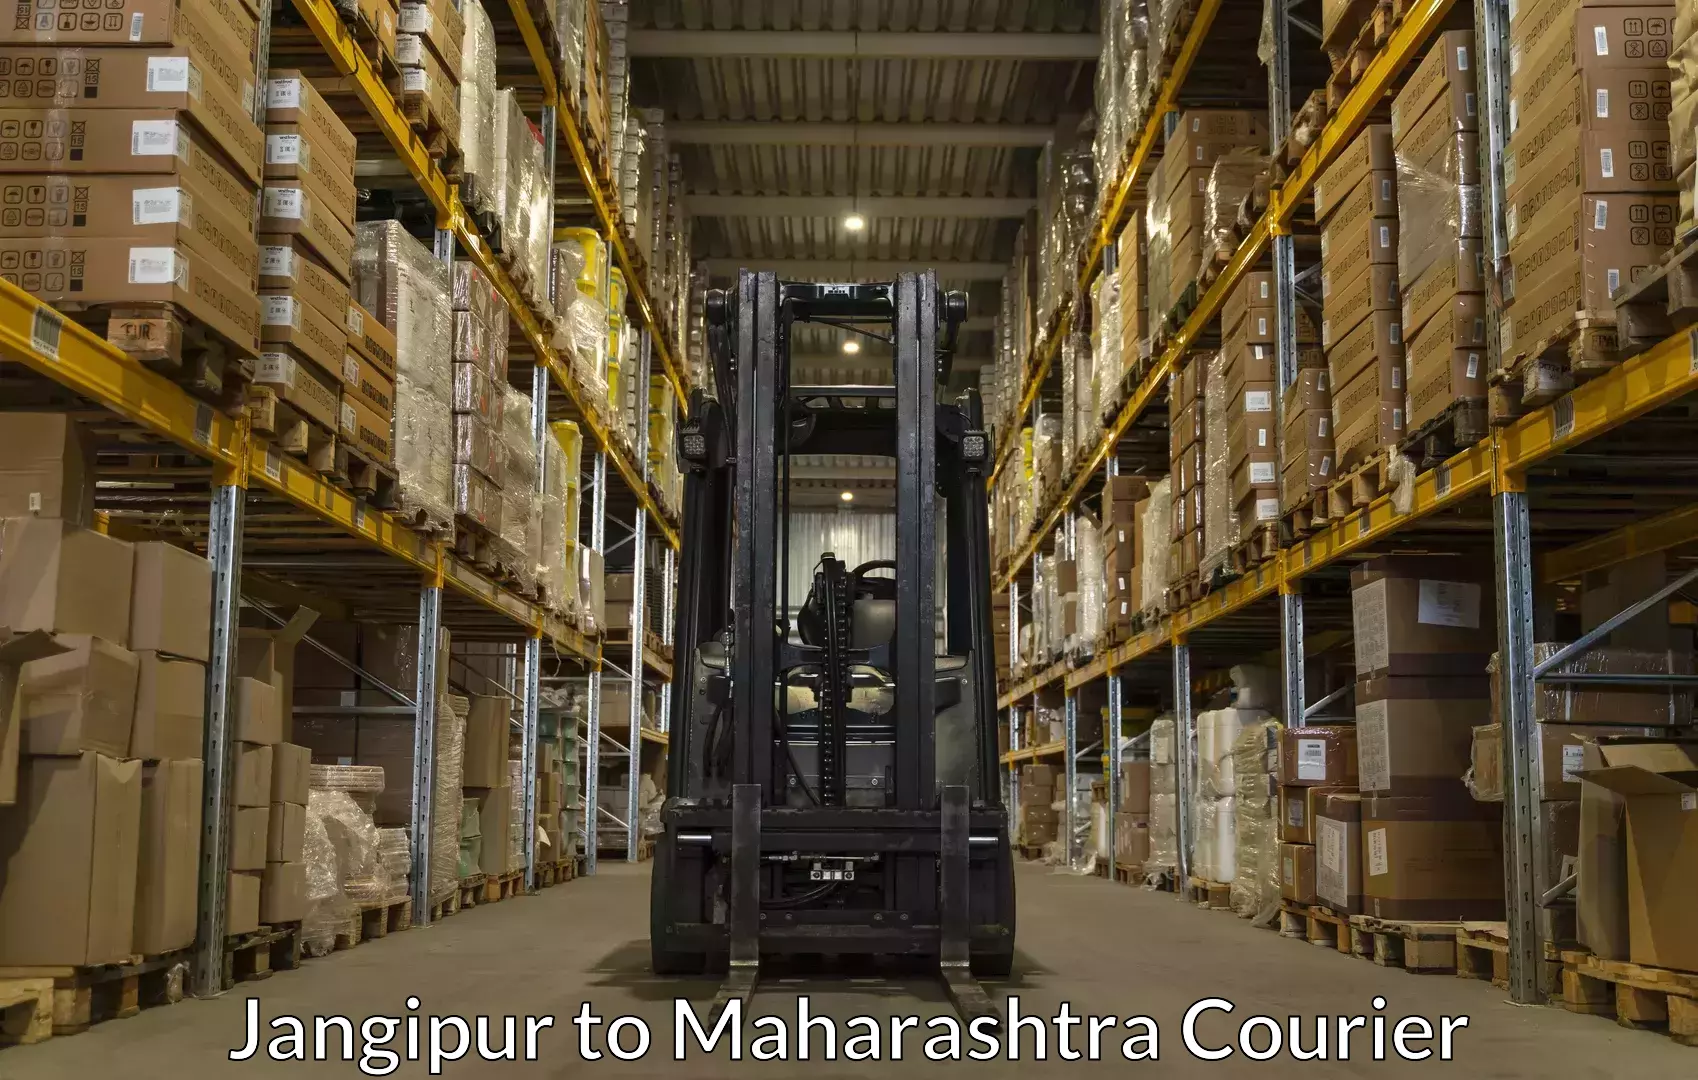 Luggage shipping service Jangipur to Sindhudurg